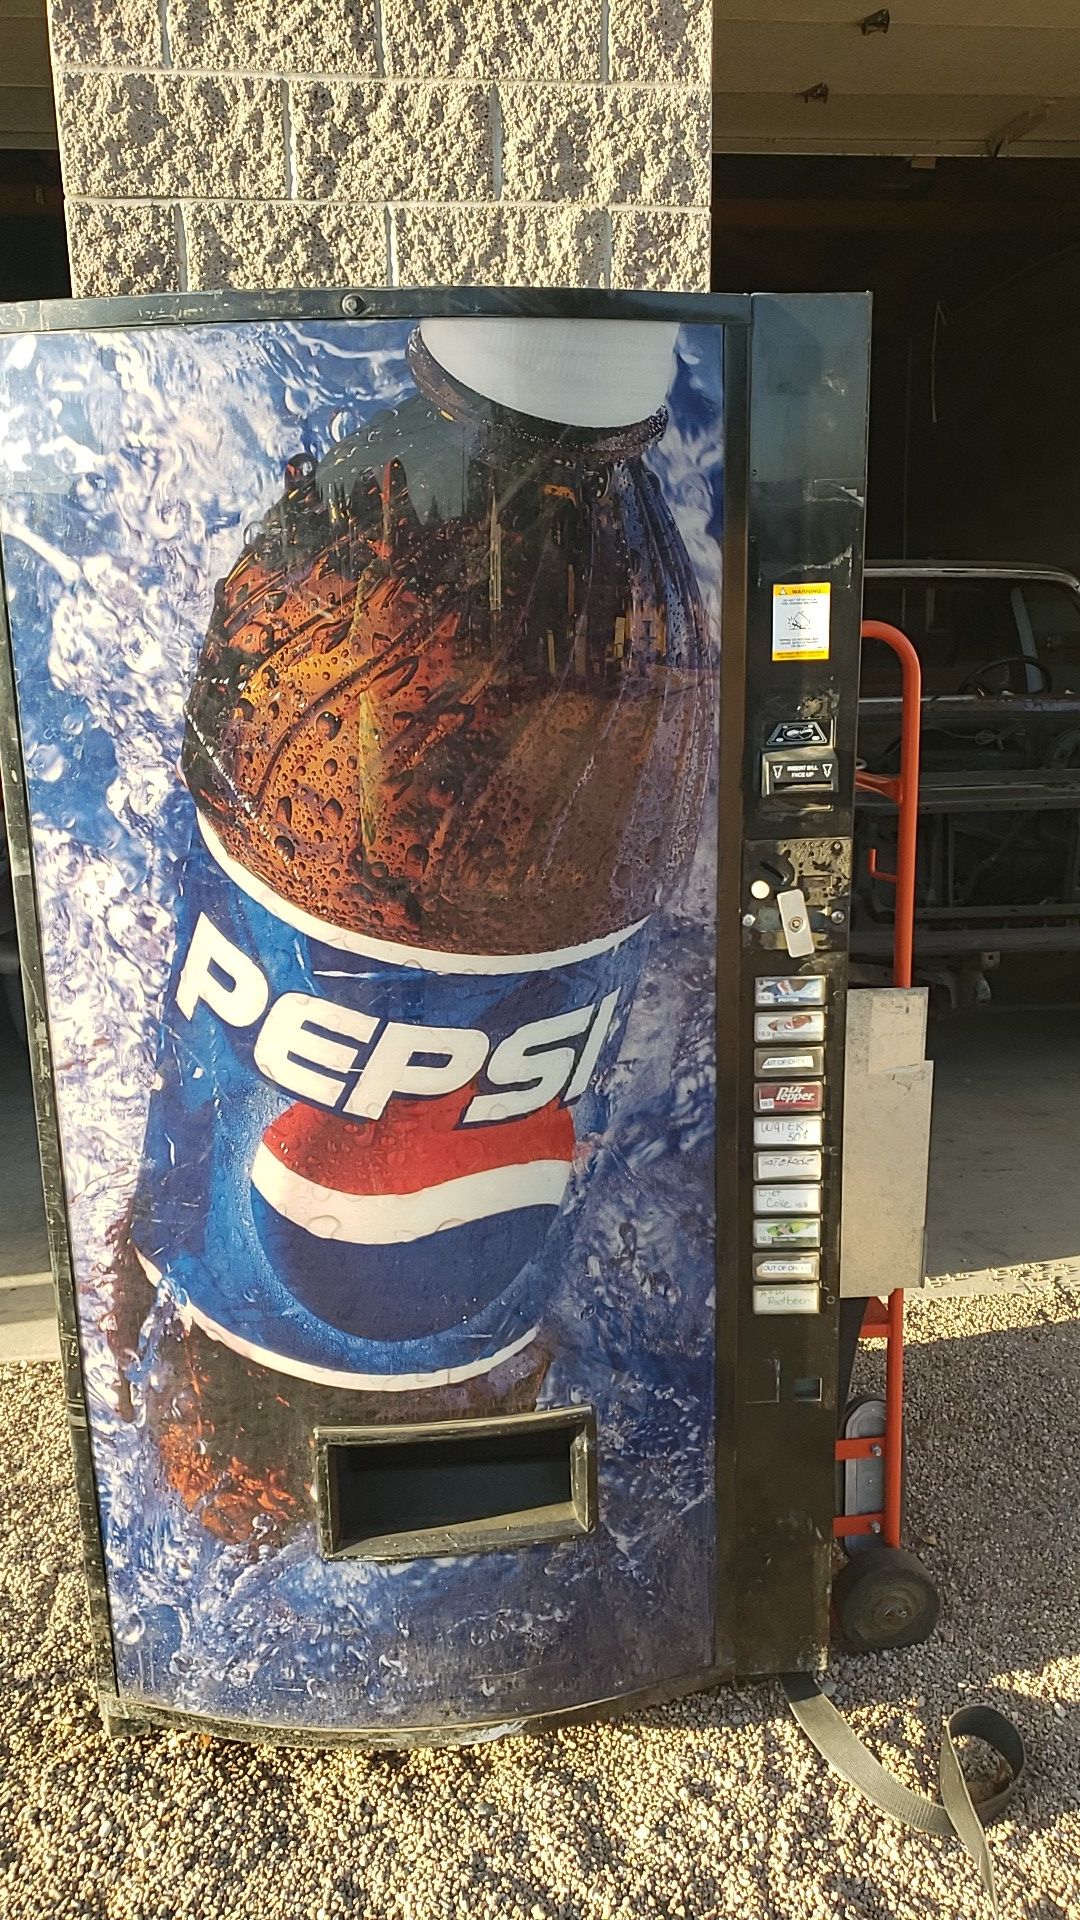 Pepsi machine